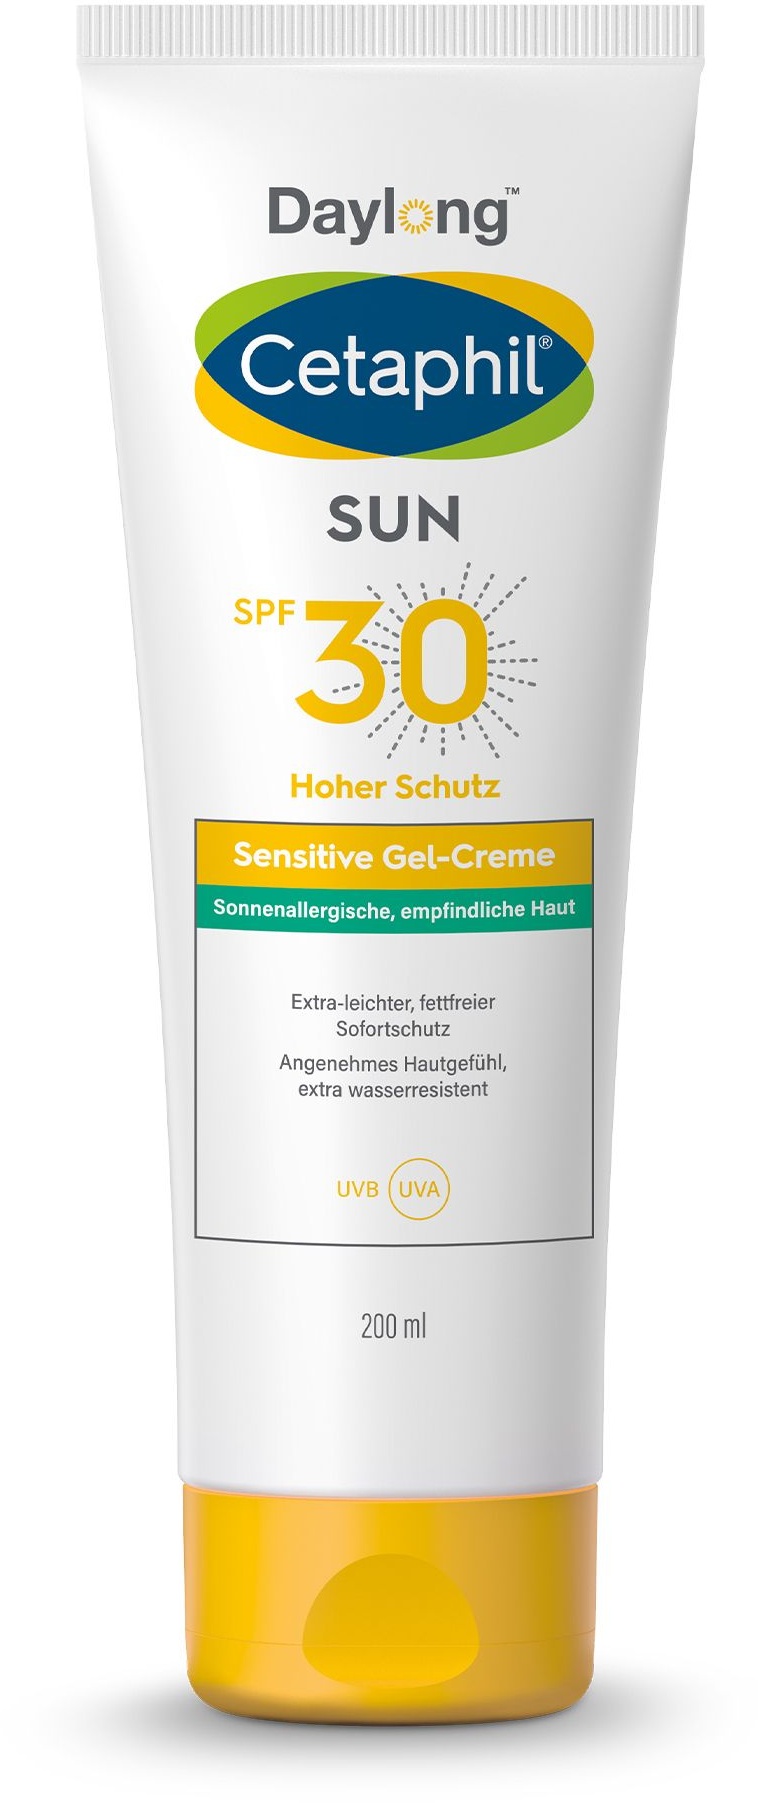 Cetaphil SUN Sensitive Gel-Creme SPF 30 Extra-leichter, fettfreier Sonnenschutz